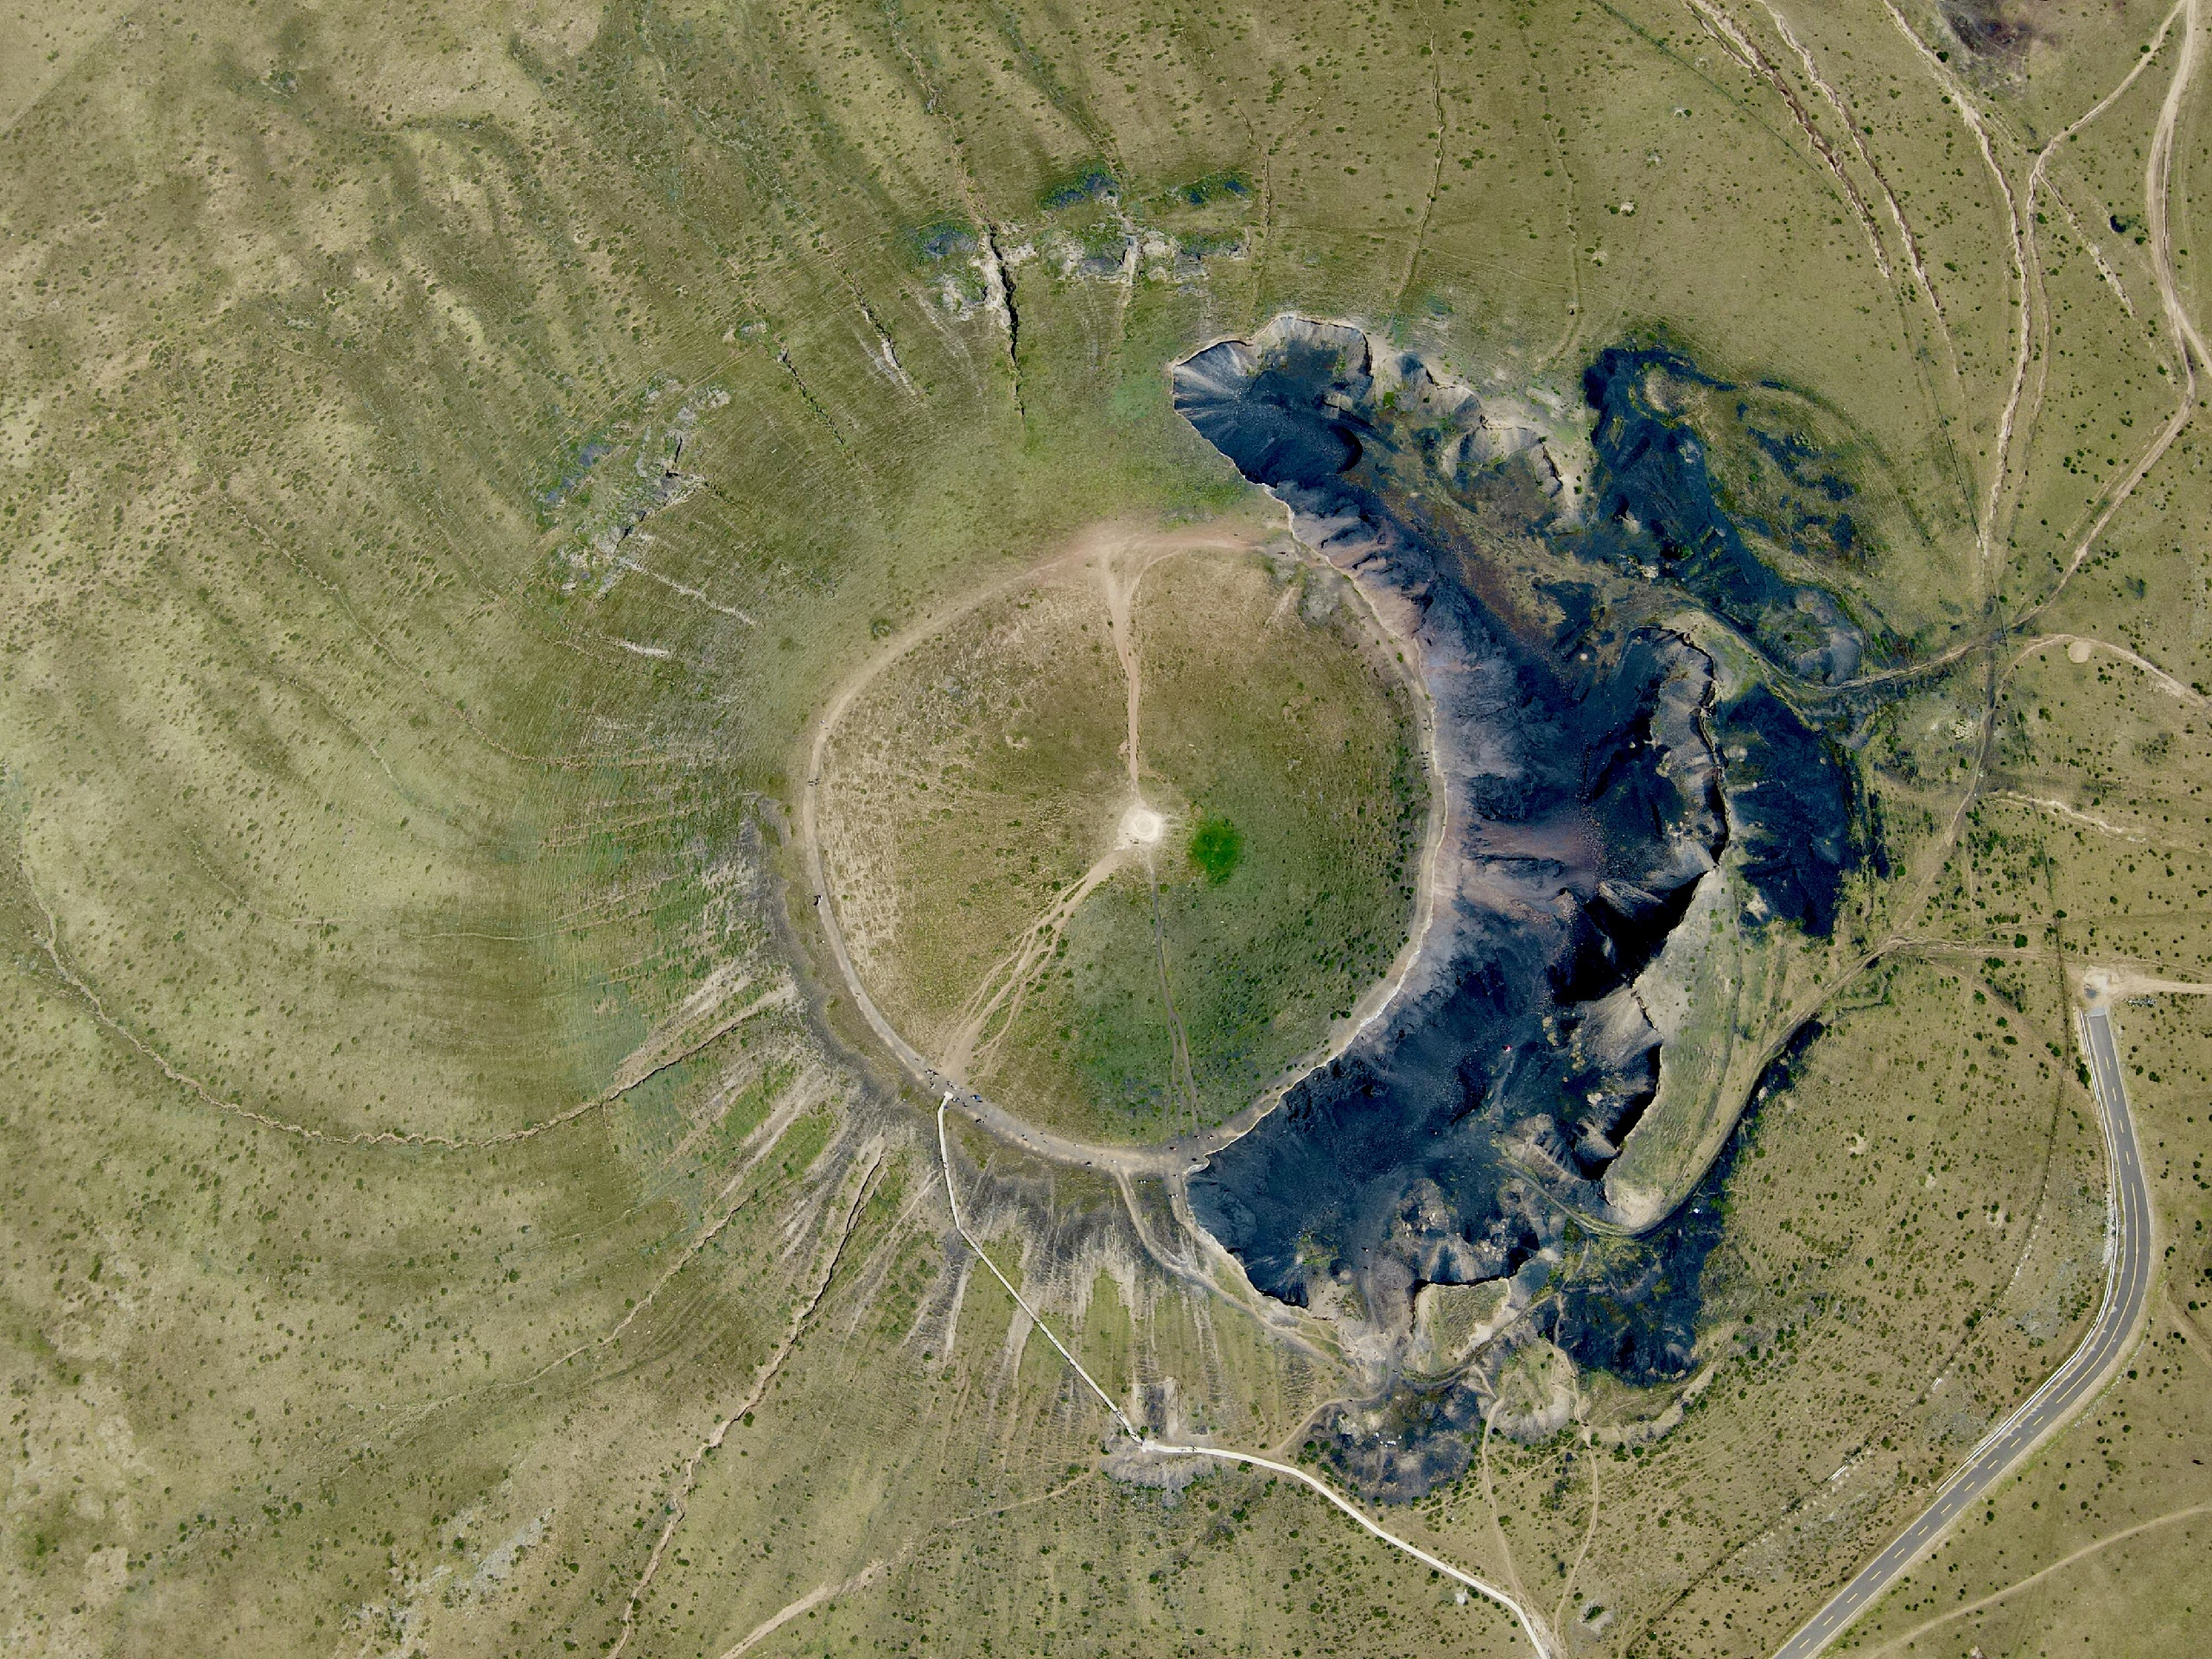 乌兰哈达火山，是一座休眠活火山，这里不仅有草原风光，还有暗黑系的风景